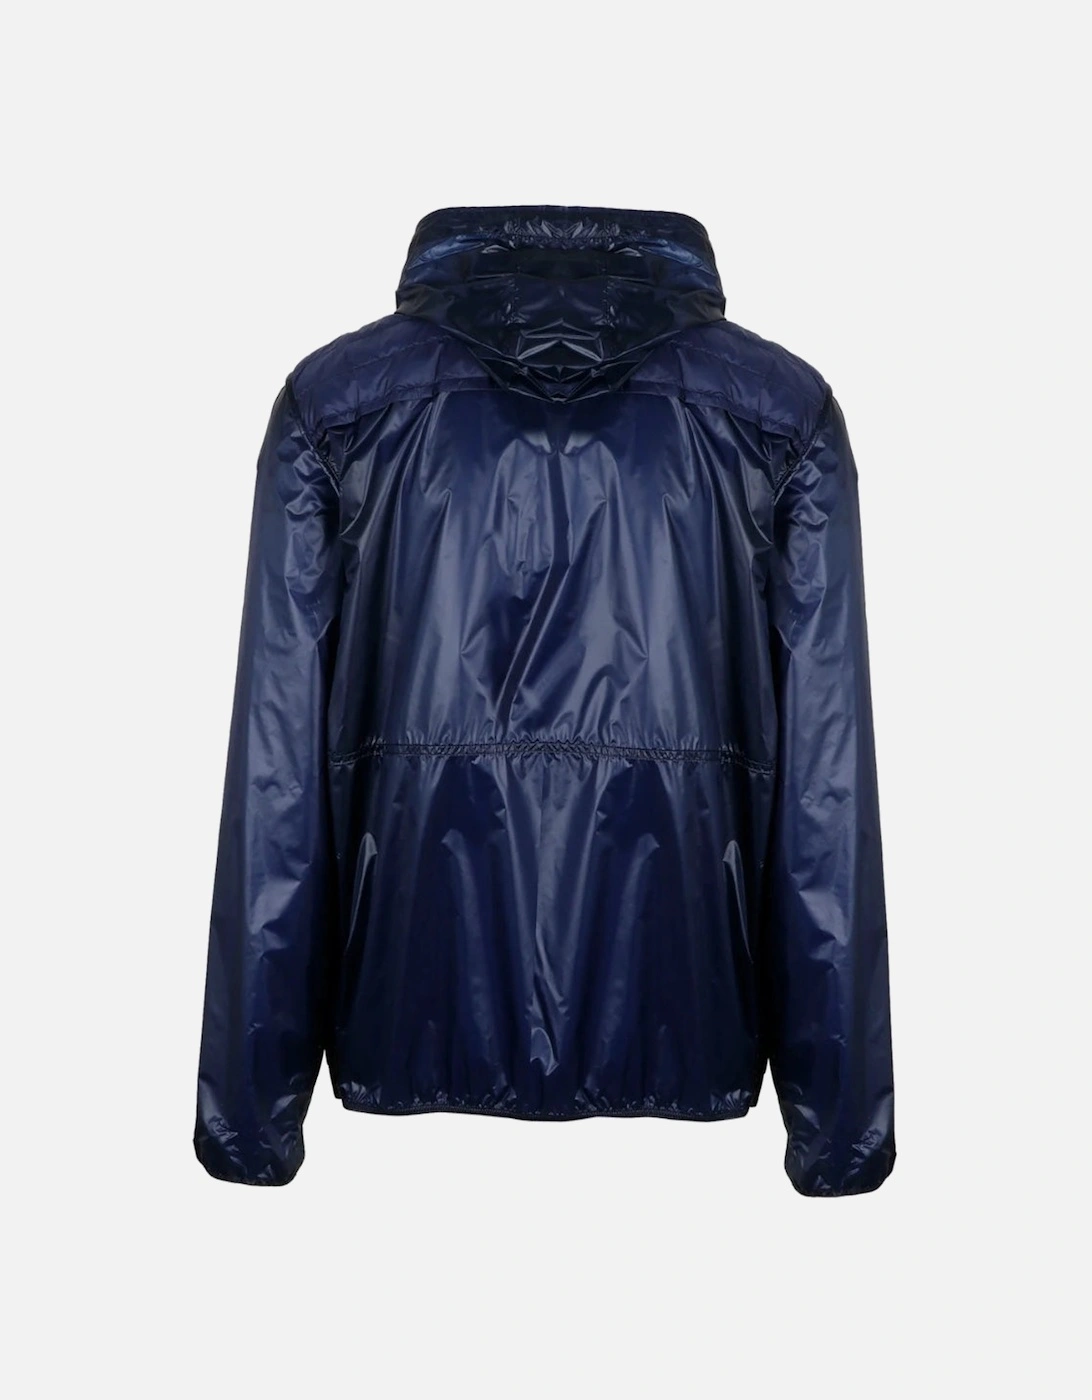 Genius X Craig Navy Blue Padded Zip-Up Hooded Jacket